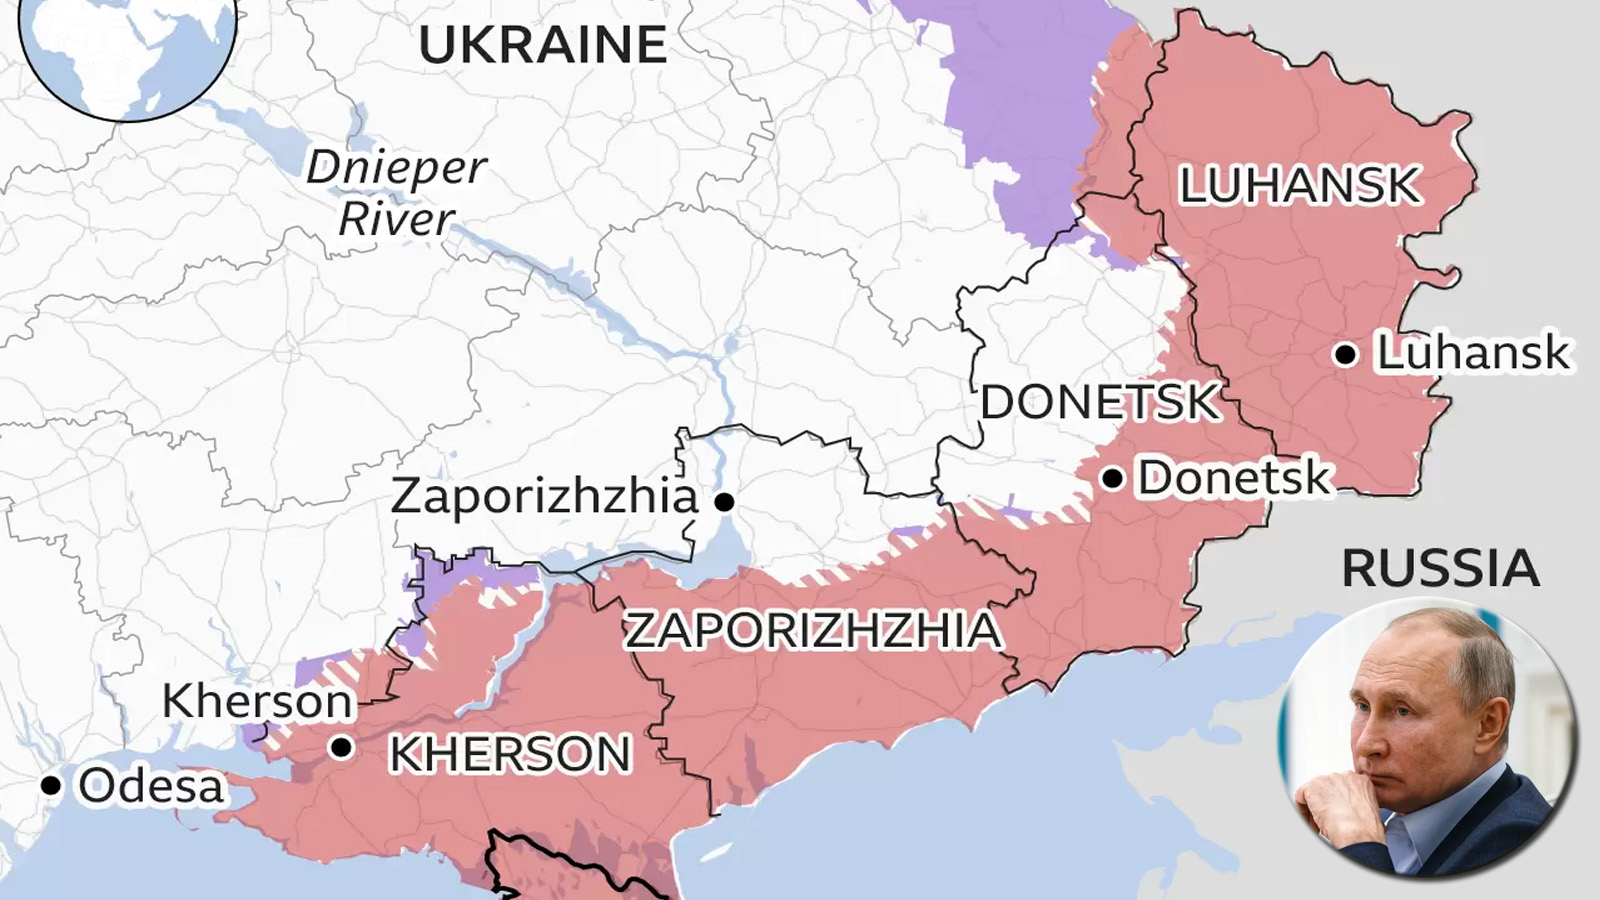 युक्रेनका चार ठुला शहर रुसमा गाभिदै, पश्चिमा देशलाई ठुलो खतरा